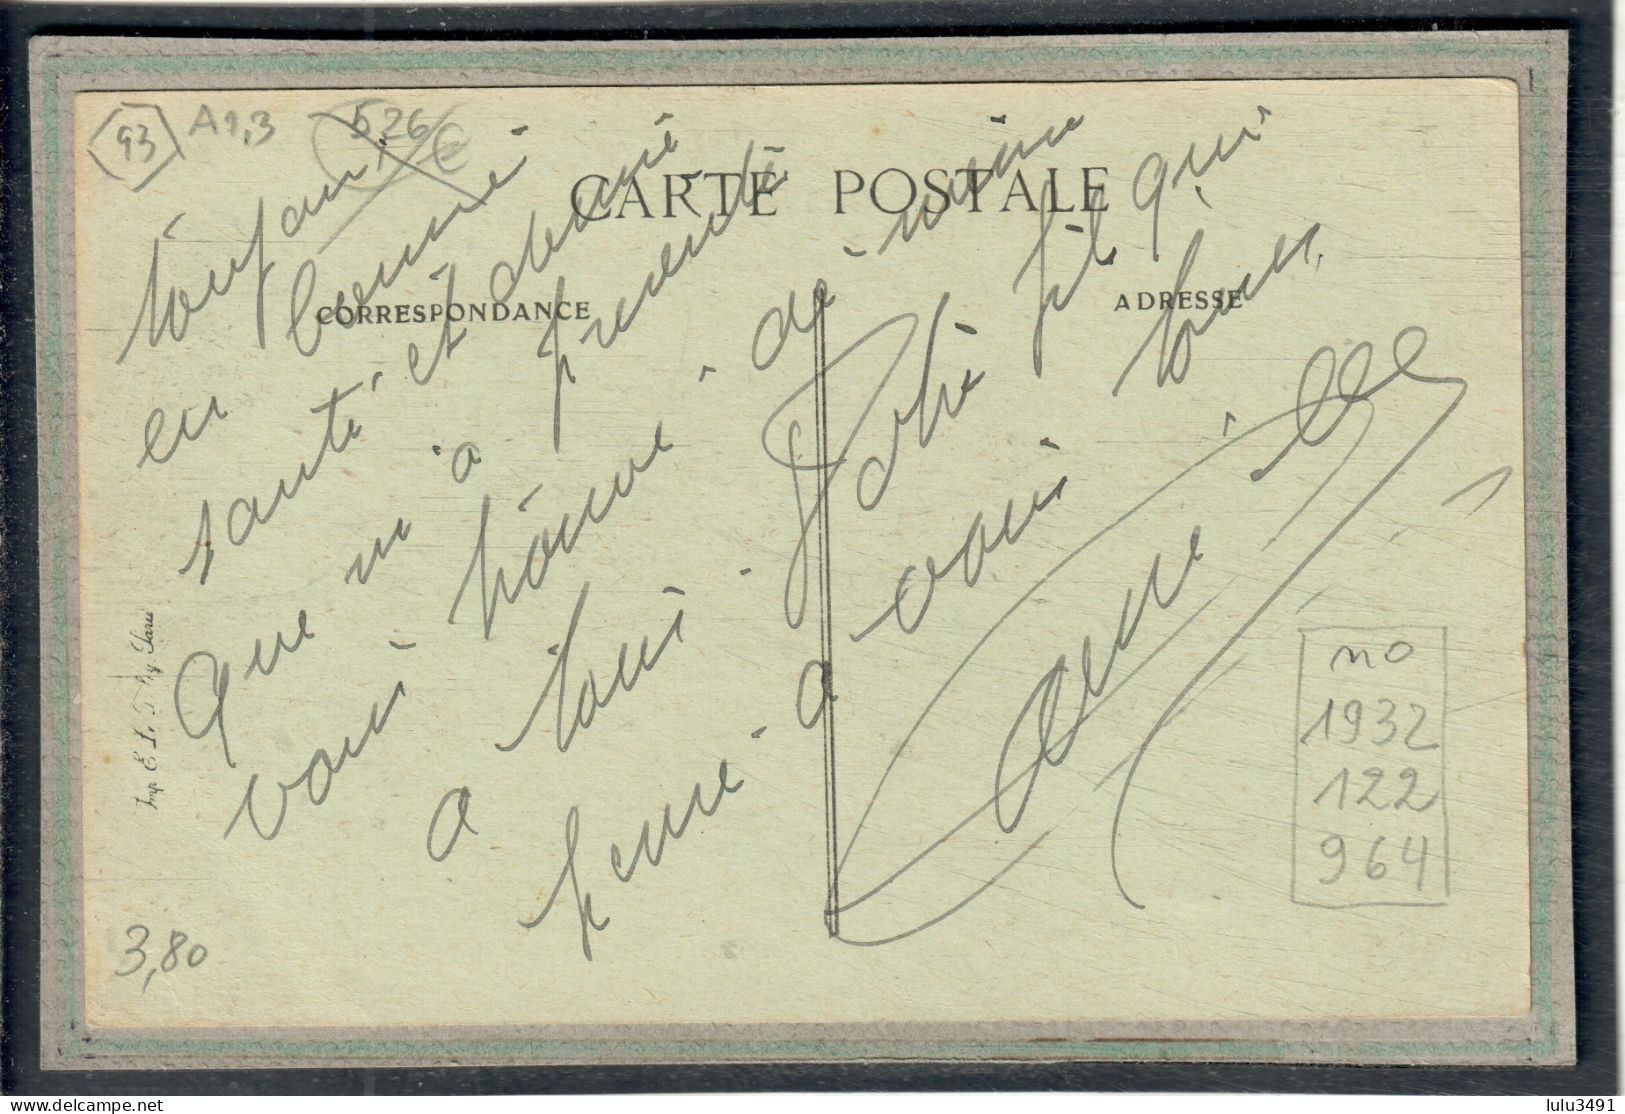 CPA  (93) BOBIGNY - Mots Clés: Canal De L'Ourcq, Chemin De Halage, écluse, Péniche, Quai - 1920 - Bobigny